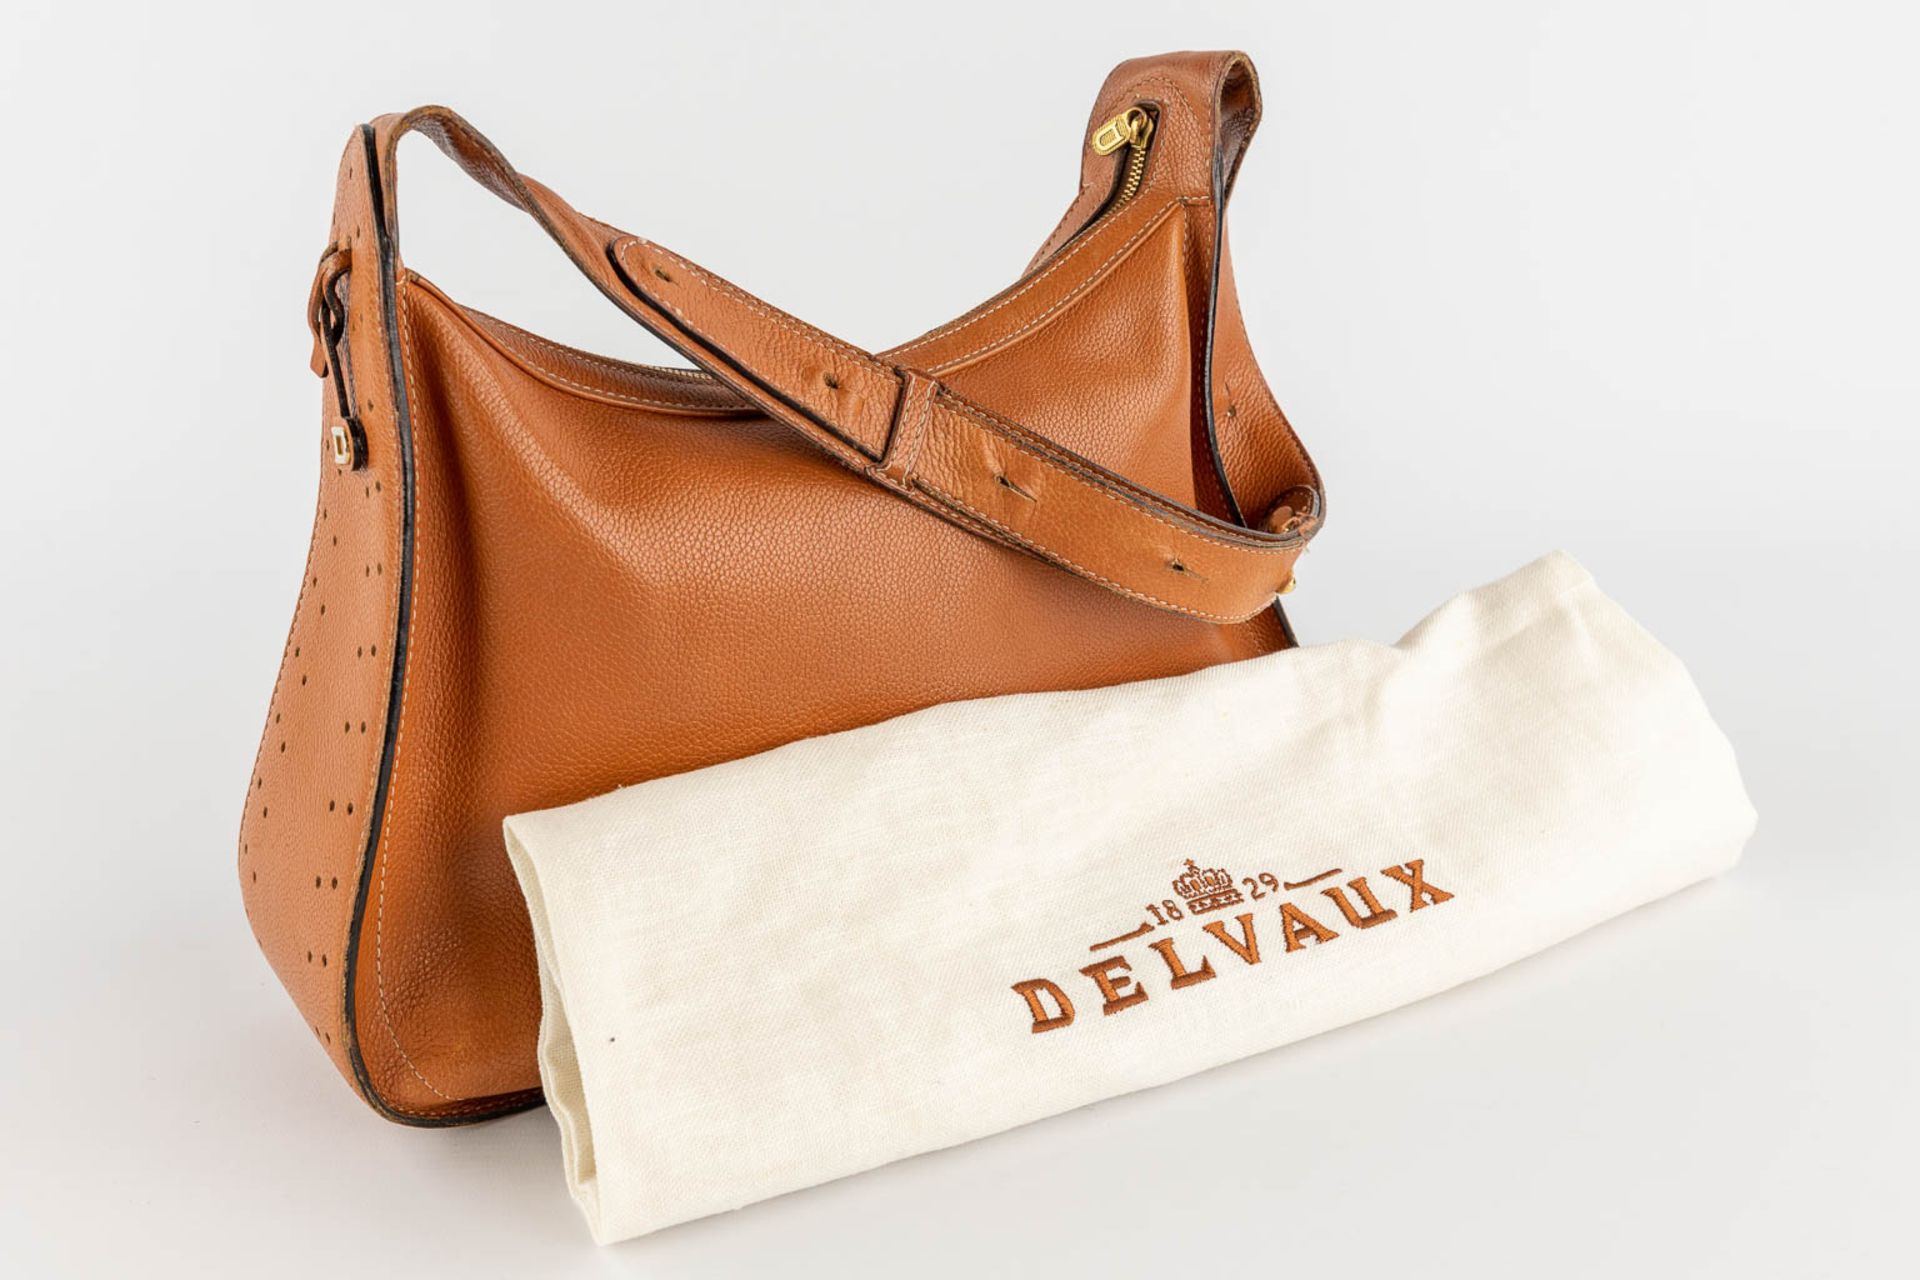 Delvaux, Pensée, a handbag made of brown leather. (W:24 x H:32 cm) - Bild 2 aus 18